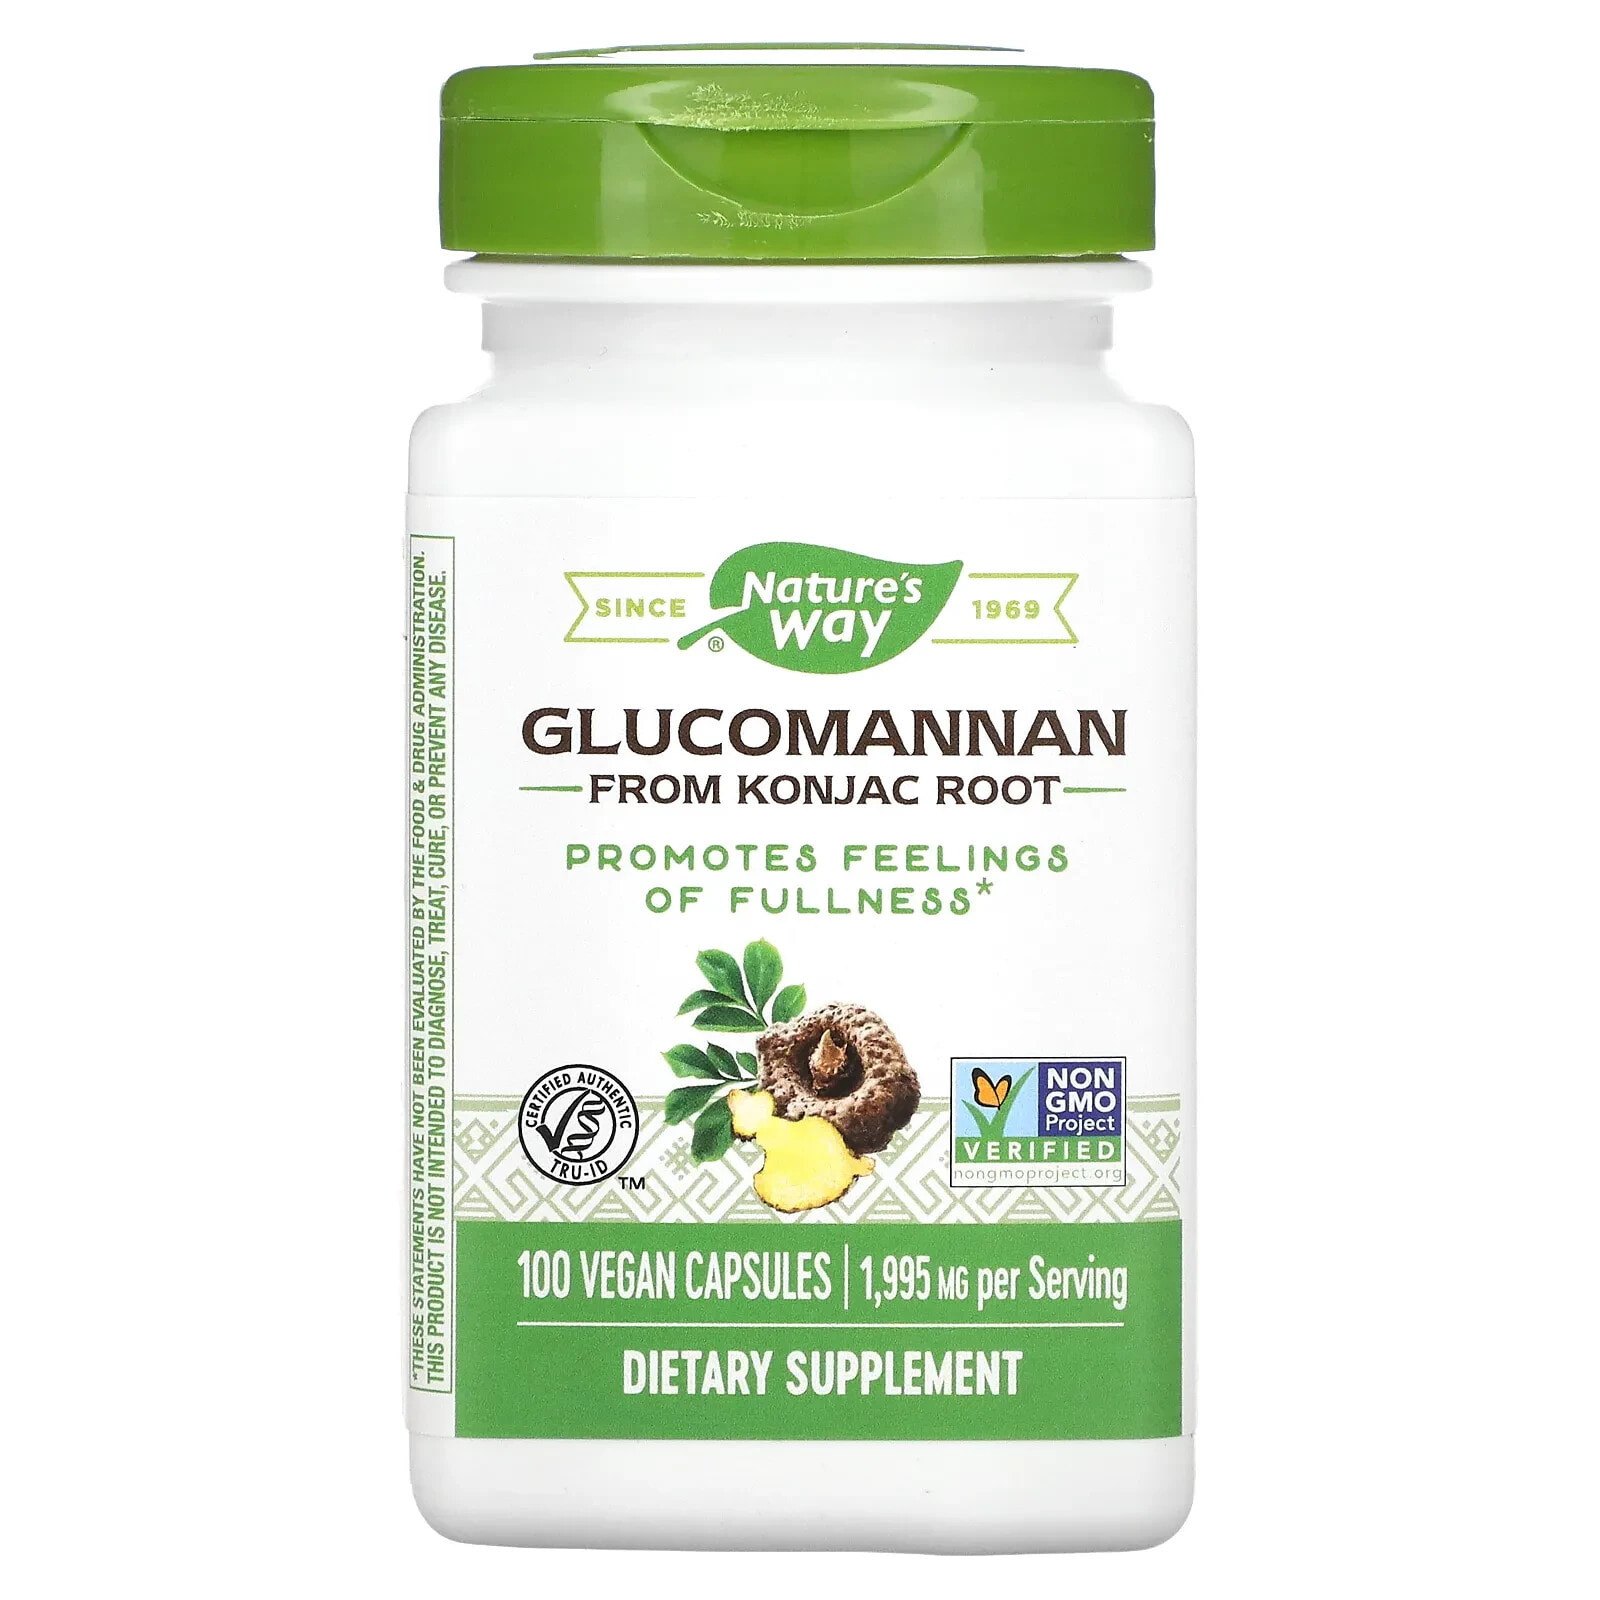 Glucomannan from Konjac Root, 1,995 mg, 100 Vegan Capsules (665 mg per Capsule )